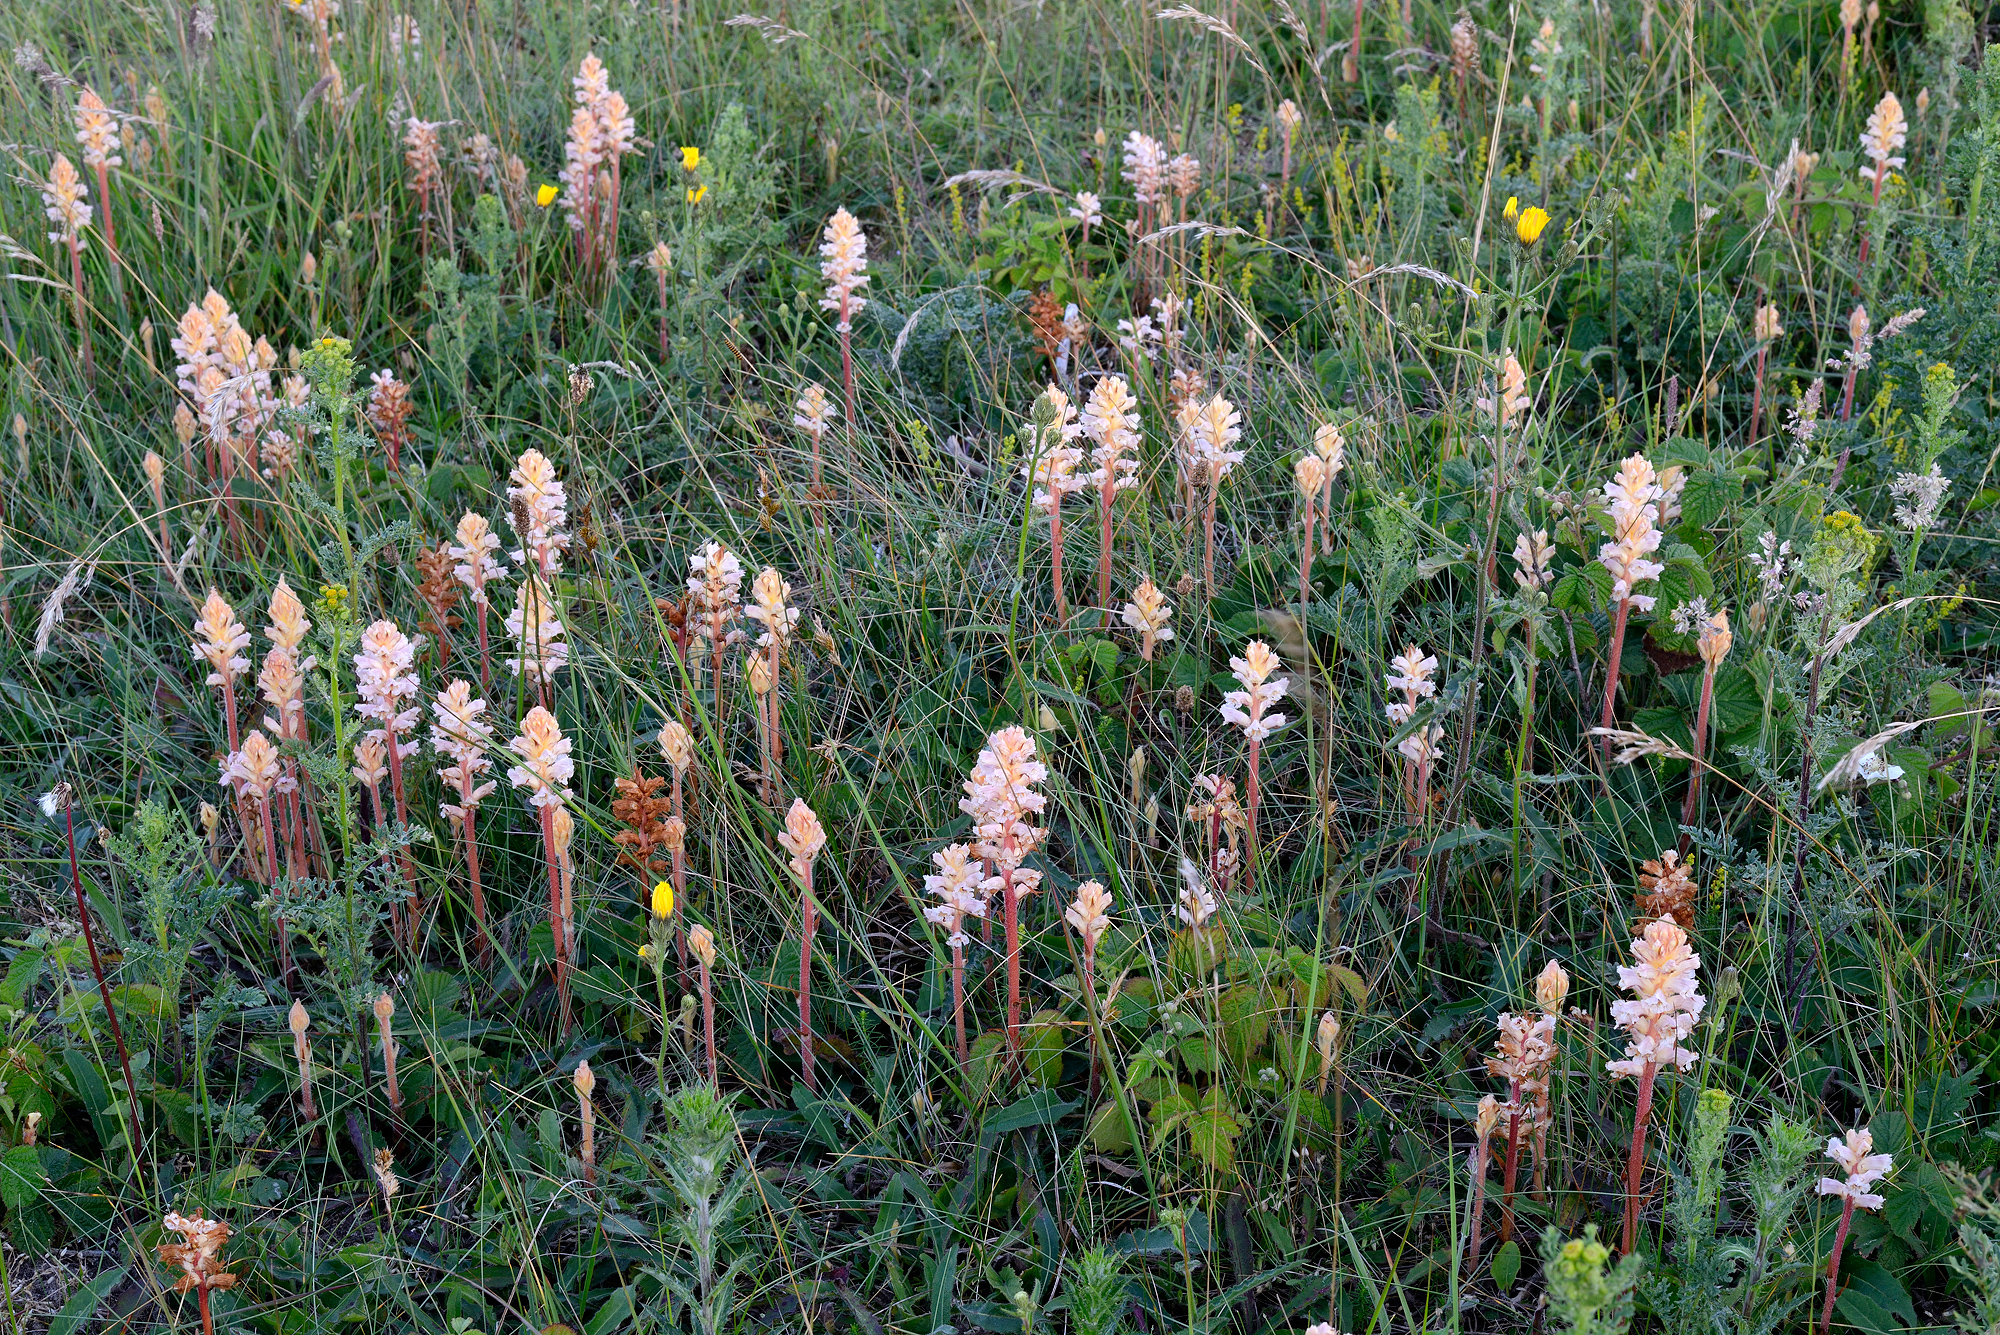 Stengels en witte, buisvormige bloemen van bitterkruidbremraap (Orobanche picridis) in het zeedorpenlandschap van het Noordhollands Duinreservaat bij Wijk aan Zee.